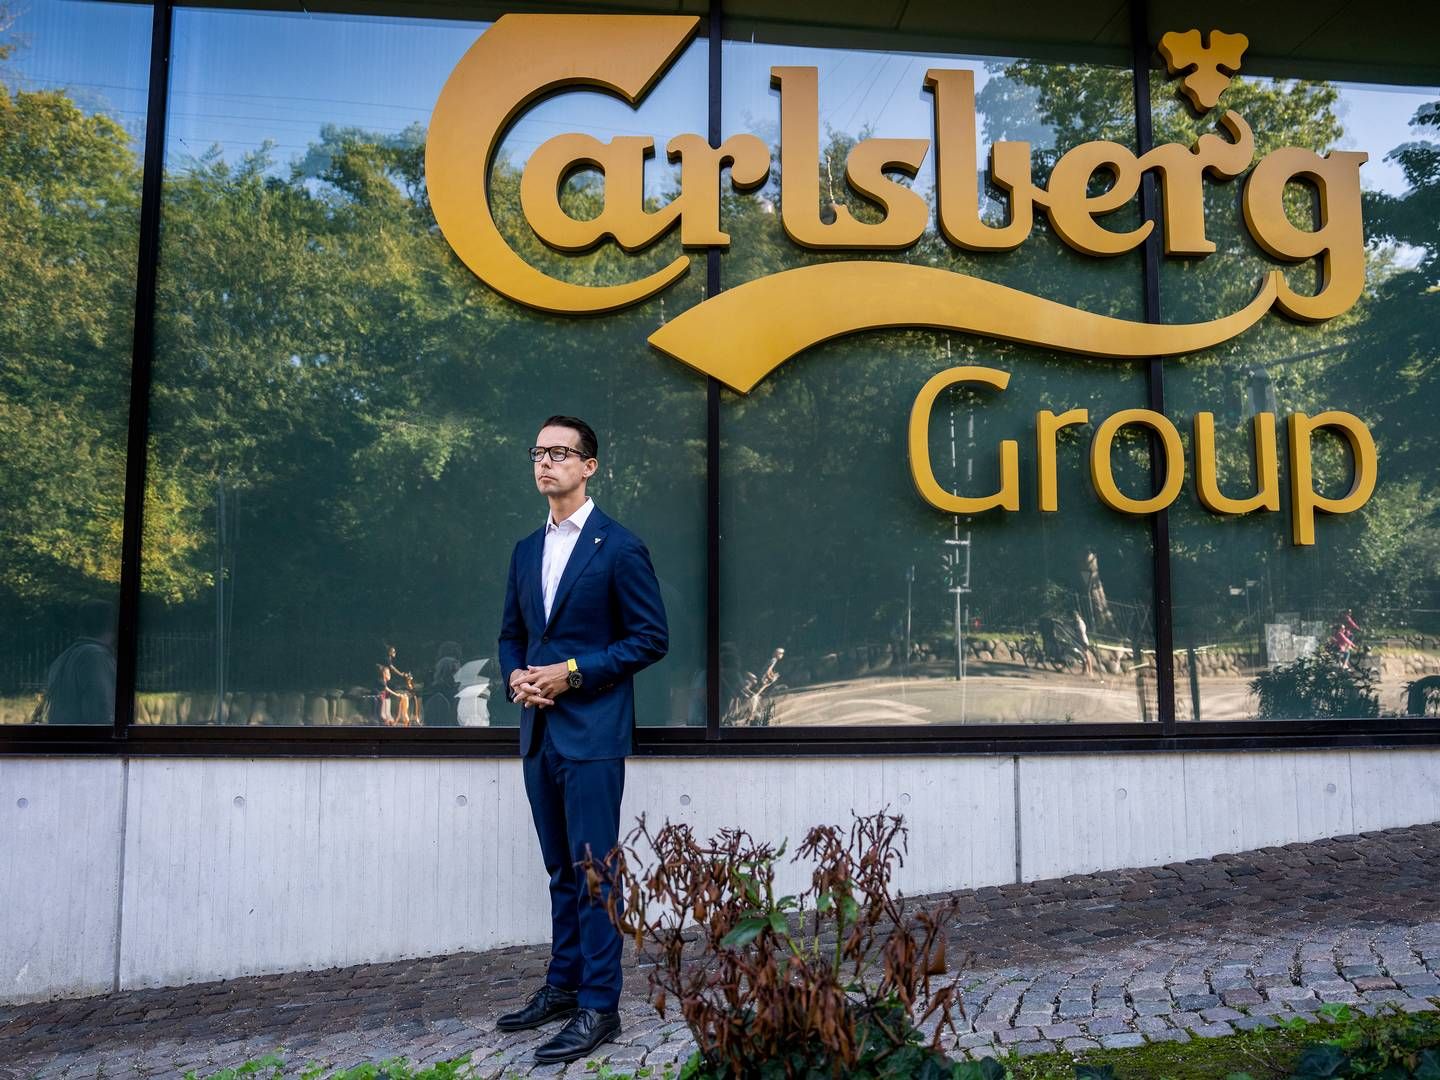 For første gang har Jacob Aarup-Andersen præsenteret regnskab som adm. direktør for Carlsberg. | Foto: Stine Bidstrup